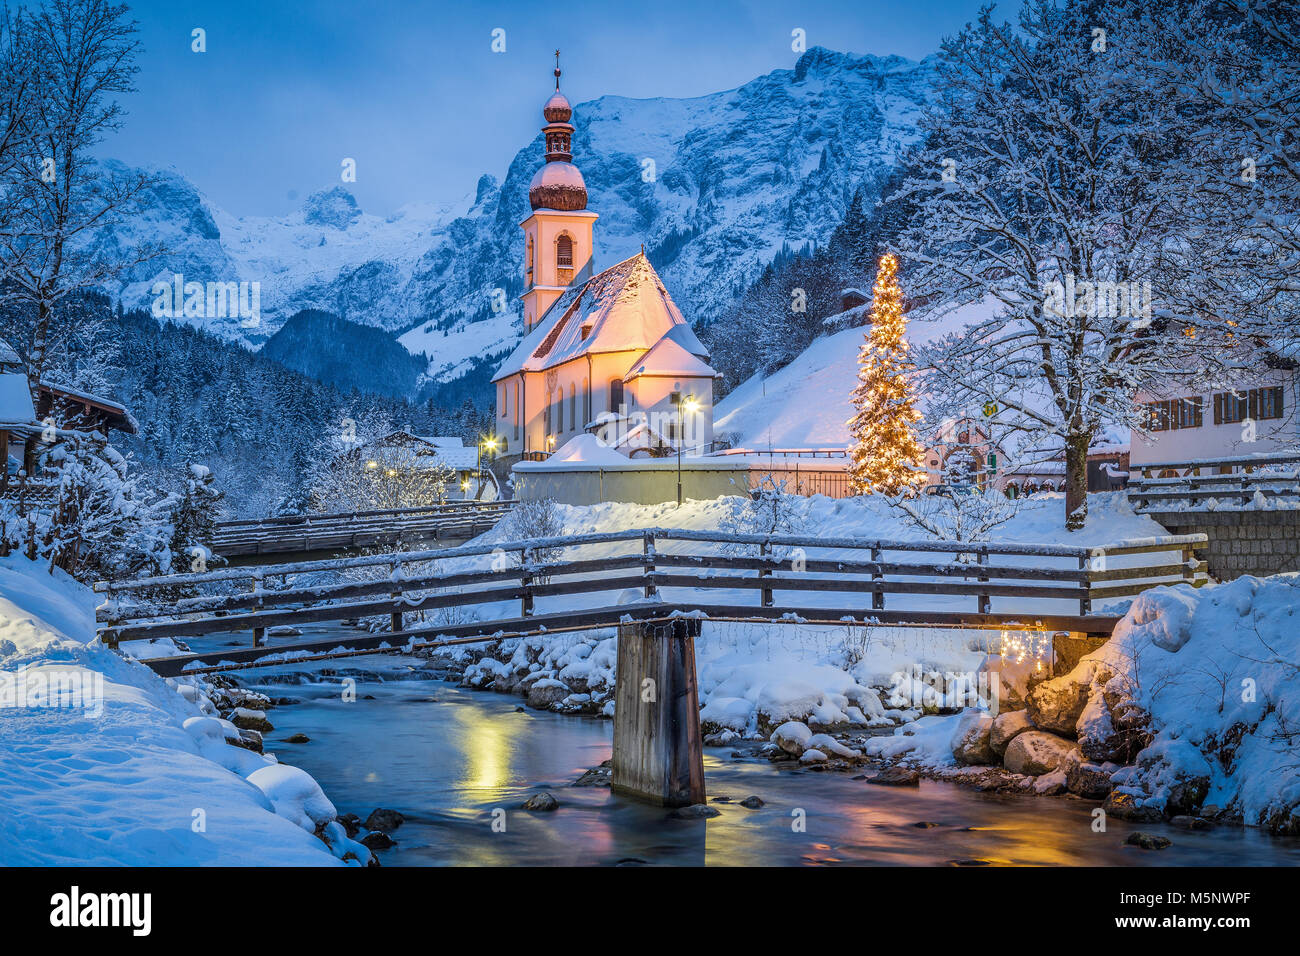 Crépuscule sur Sankt Sebastian église de pèlerinage avec arbre de Noël allumé pendant l'heure bleue à la tombée de la nuit en hiver, Ramsau, Bavière, Allemagne Banque D'Images